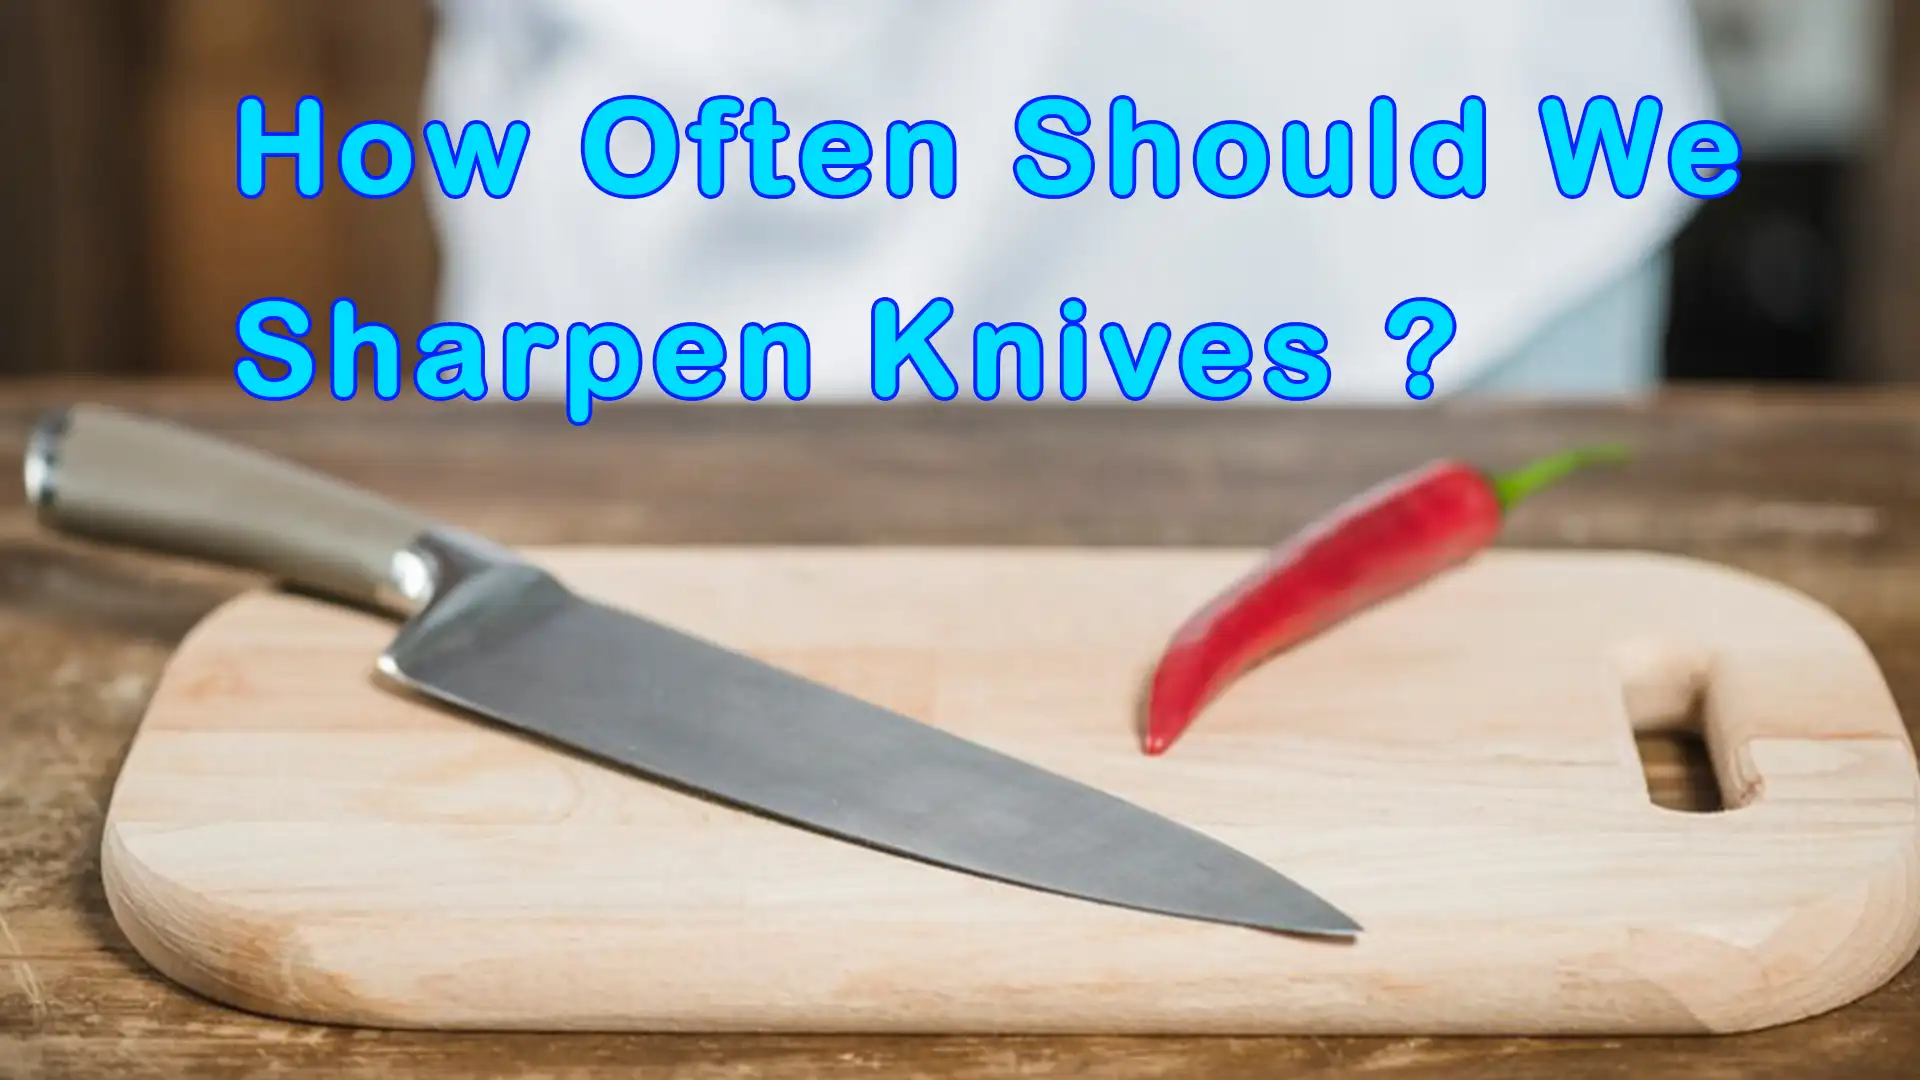 How often should we sharpen knives ?